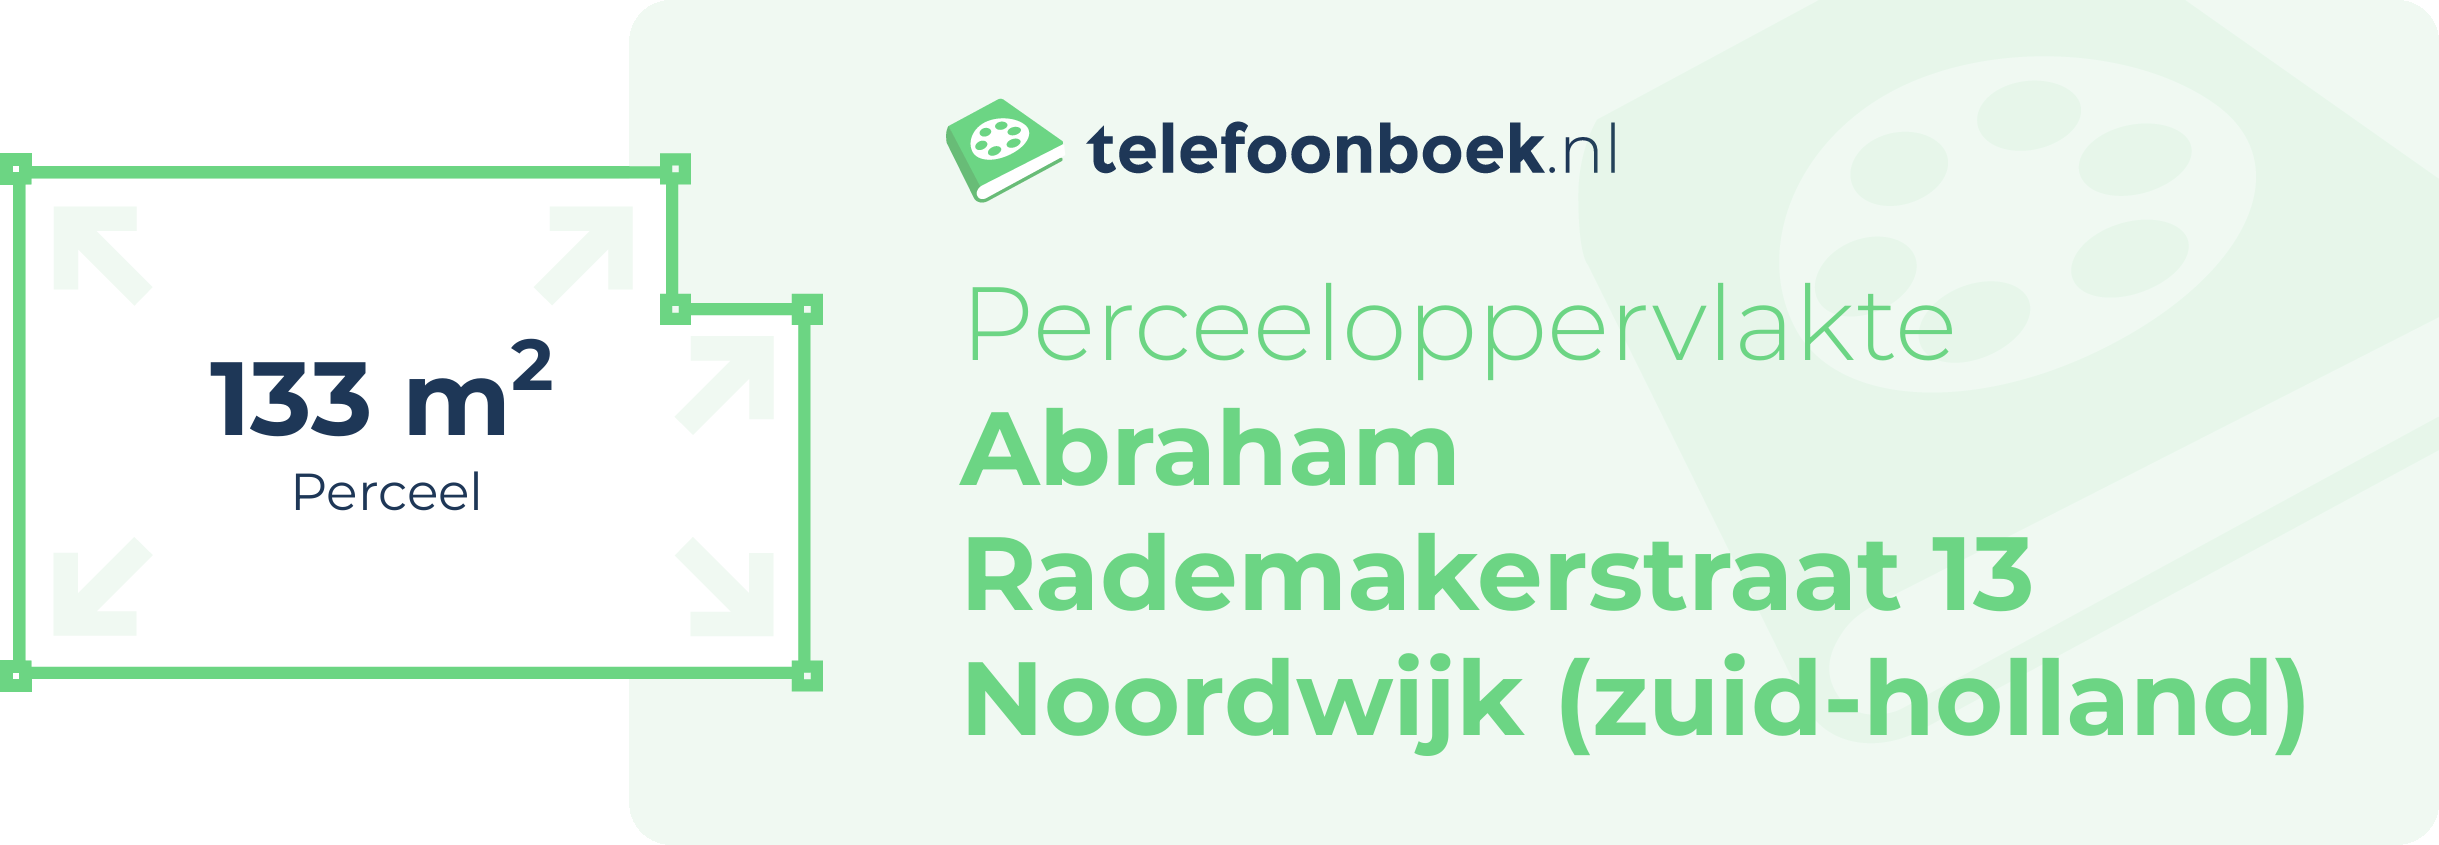 Perceeloppervlakte Abraham Rademakerstraat 13 Noordwijk (Zuid-Holland)